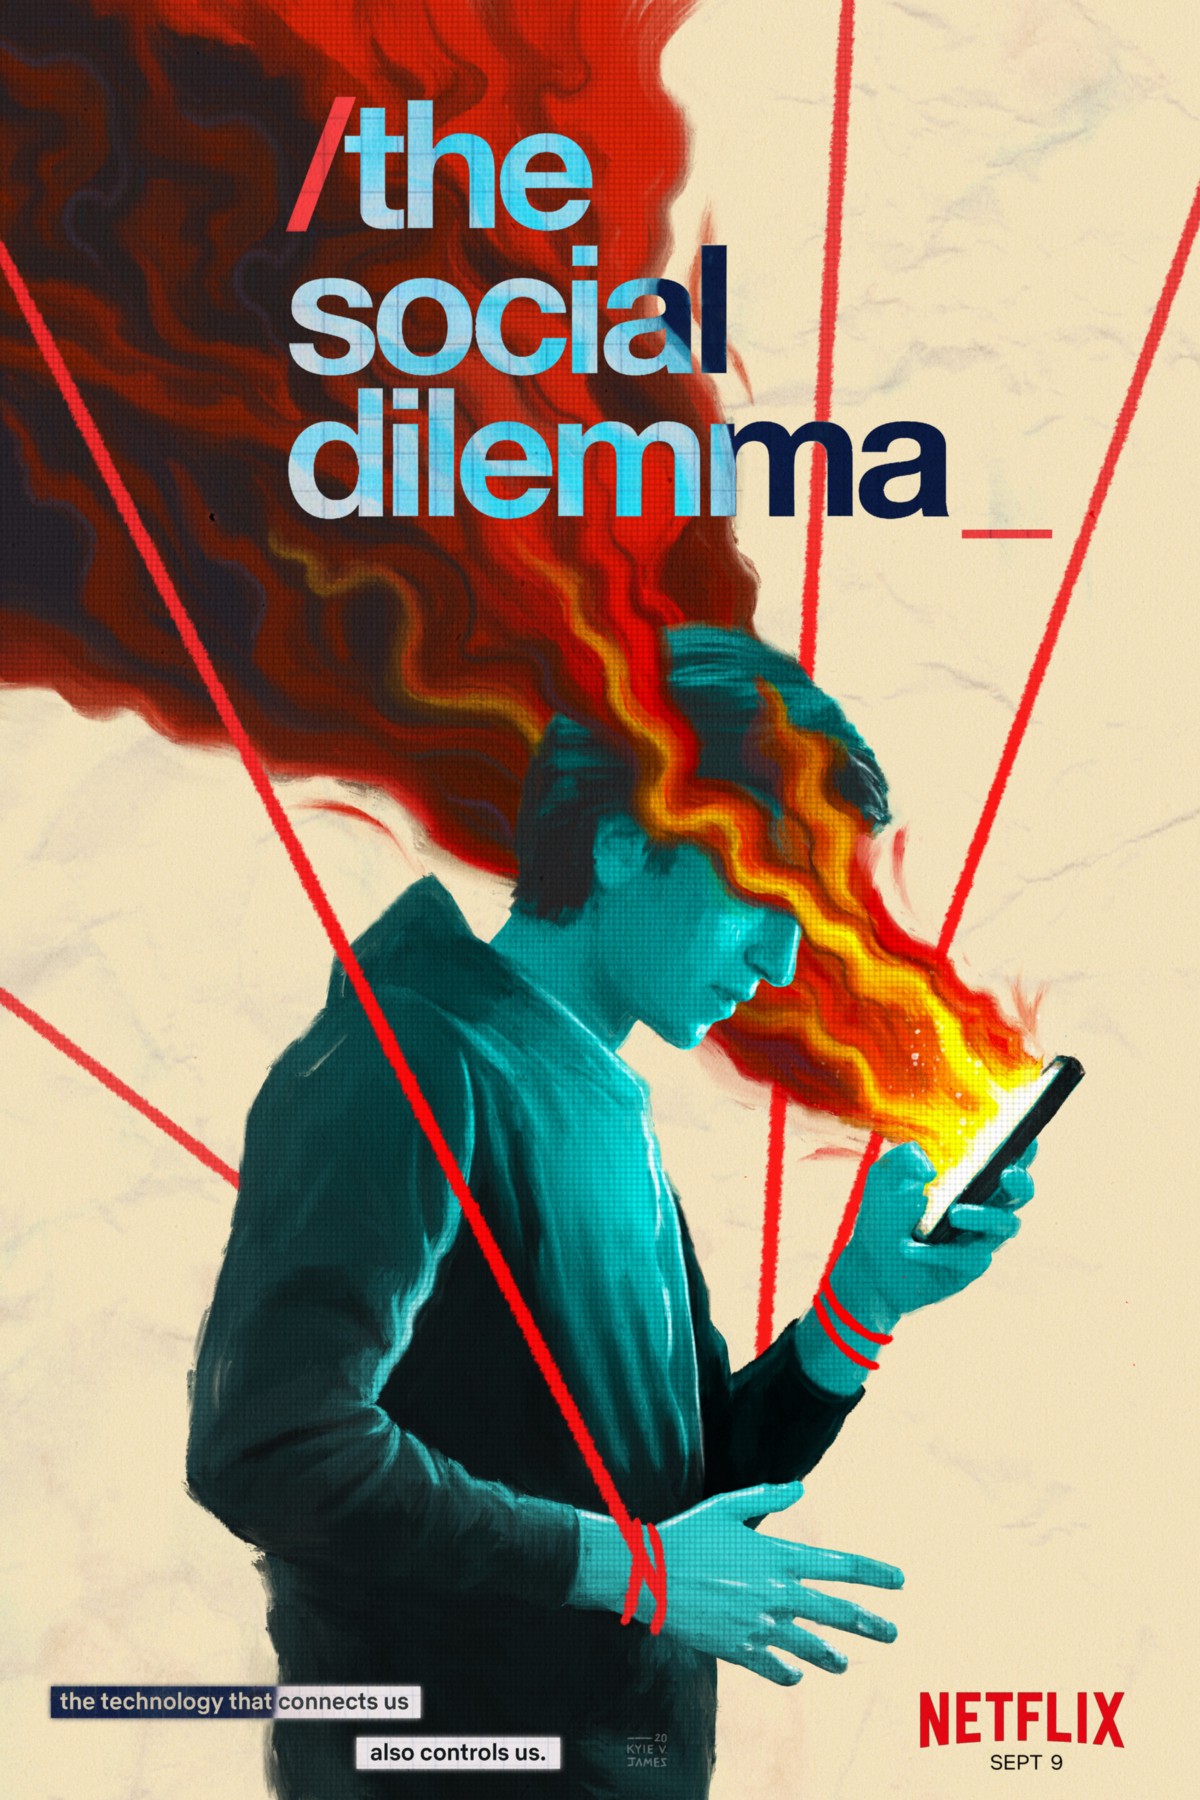 Netflix poster van the social dilemma met jongeman die in telefoon wordt gezogen.